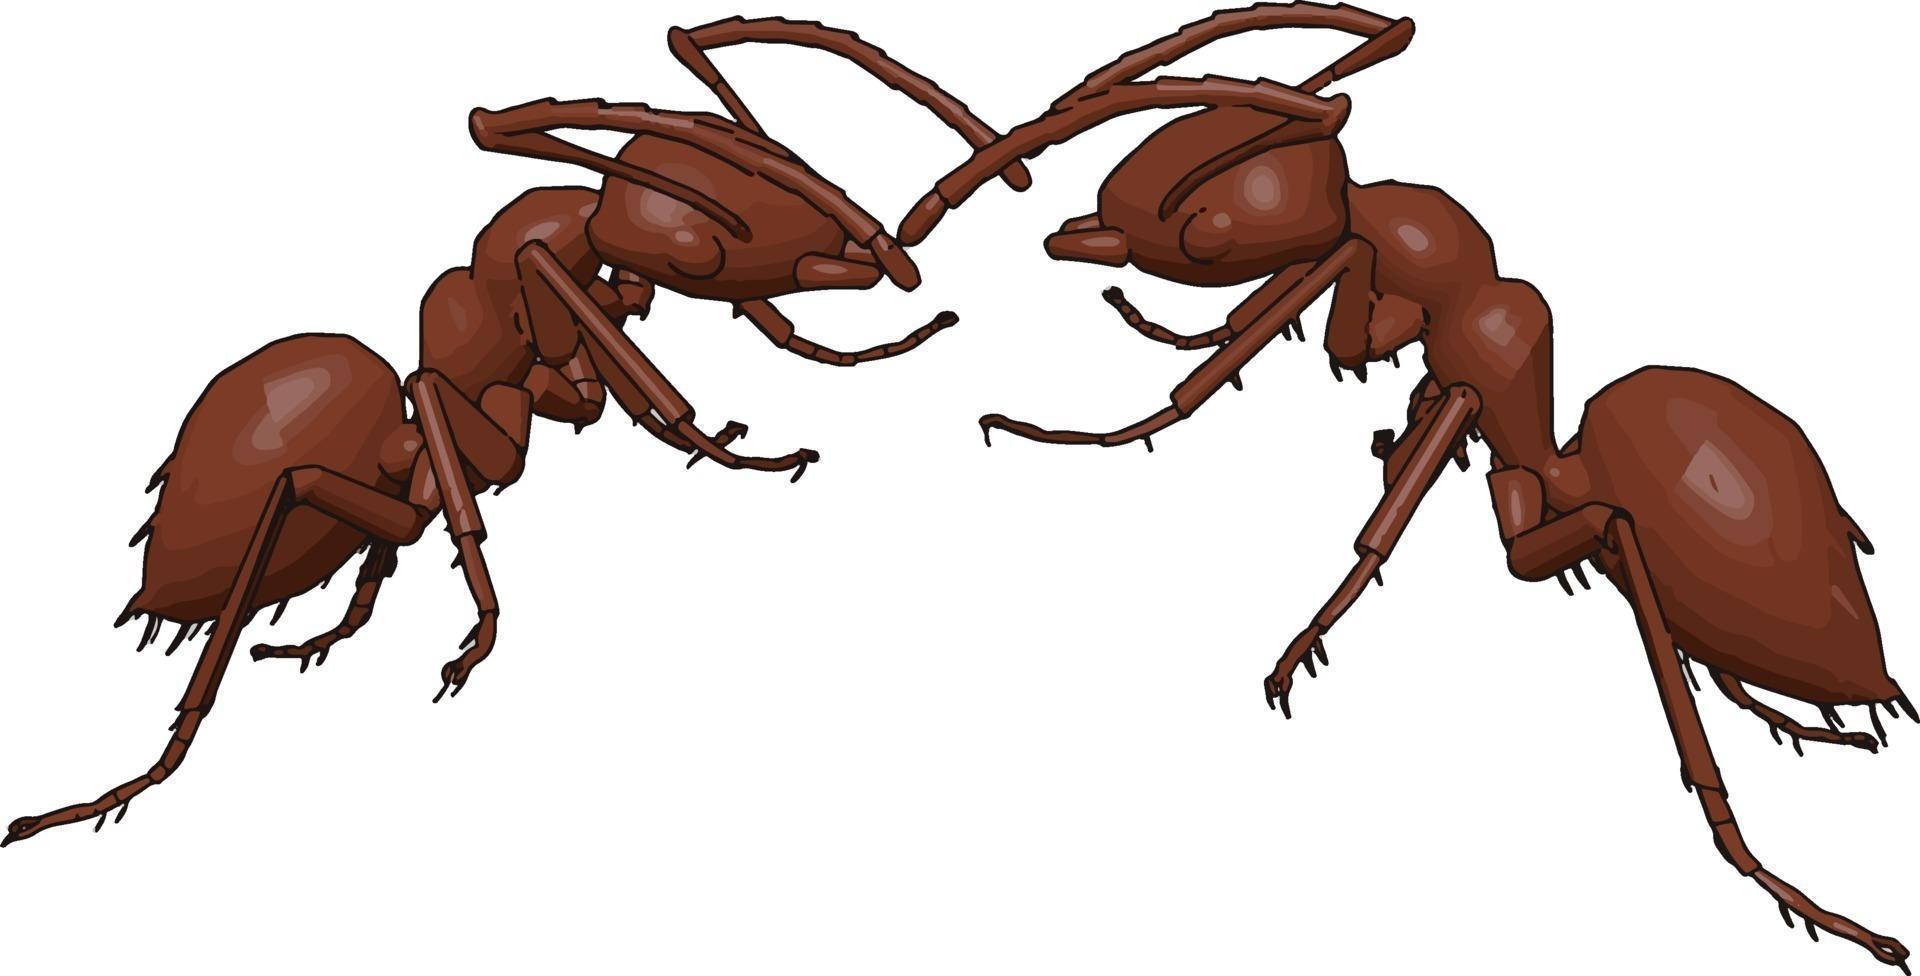 Zwei Ameisen kämpfen, Illustration, Vektor auf weißem Hintergrund.